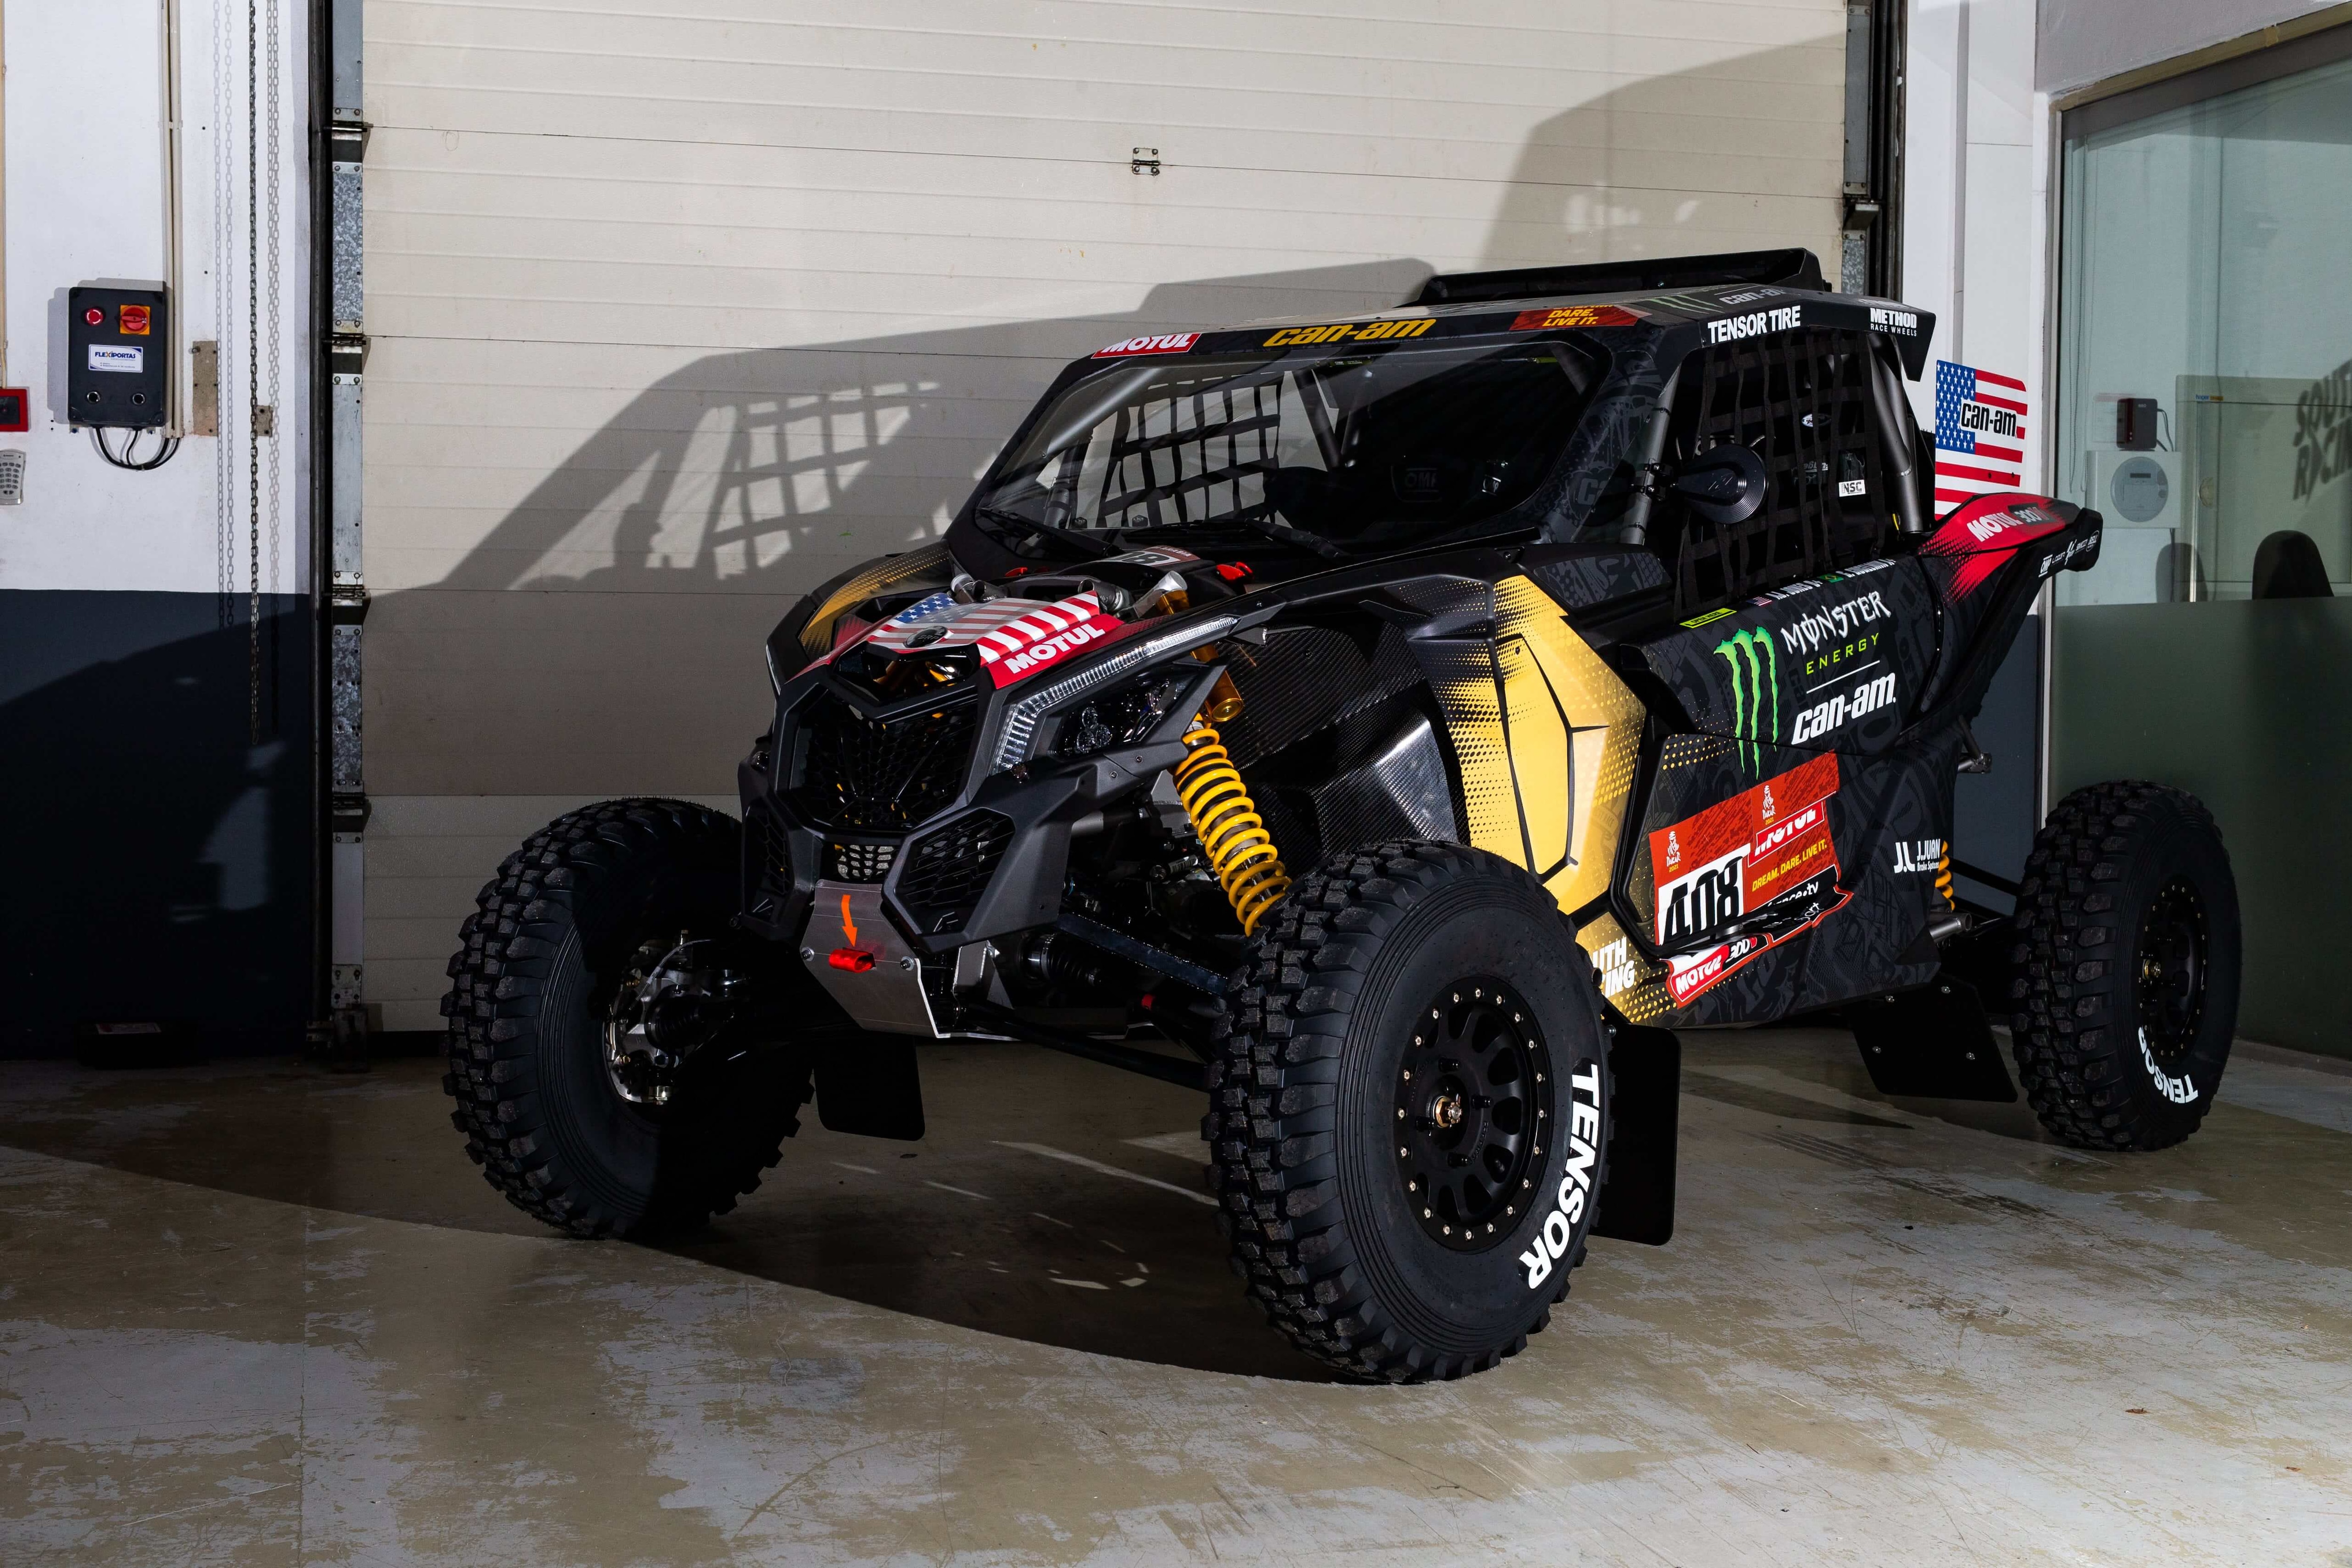 Austin Jones' custom Can-Am Maverick X3 for 2021 Dakar Rally